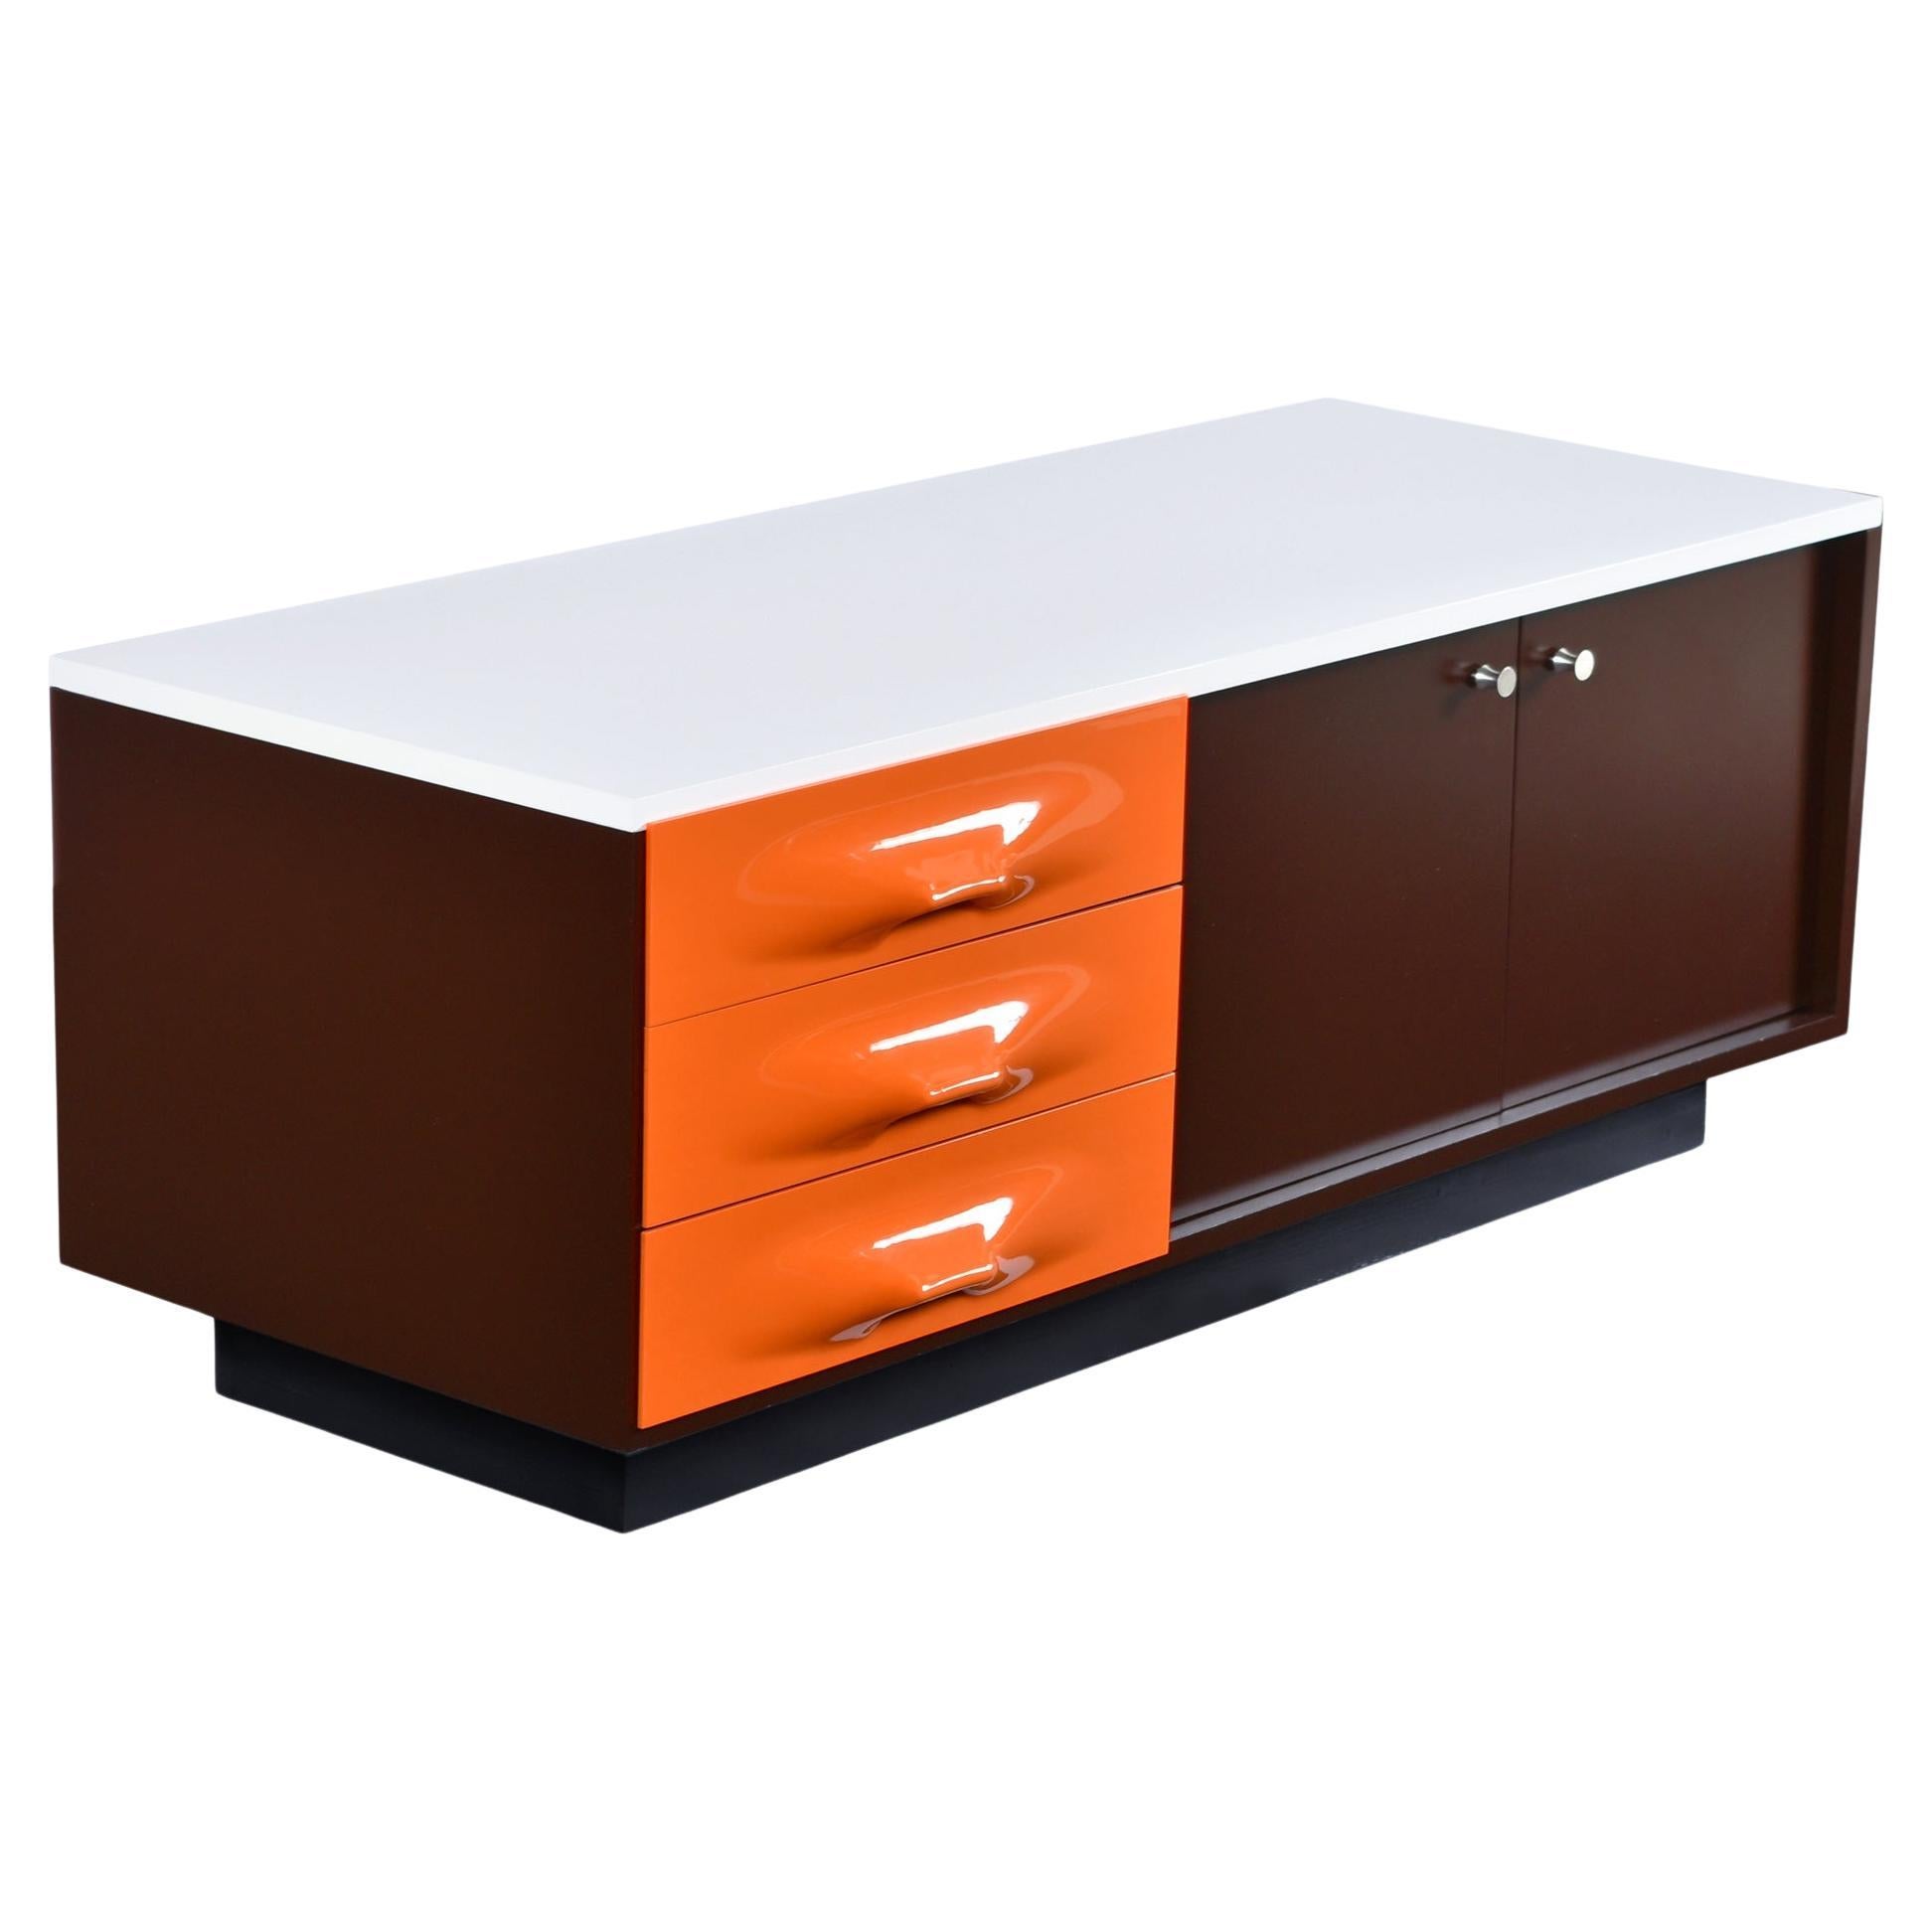 Raymond Loewy DF-2000 Orange Kunststoffschrank mit Schublade und Medienschrank-Anrichte